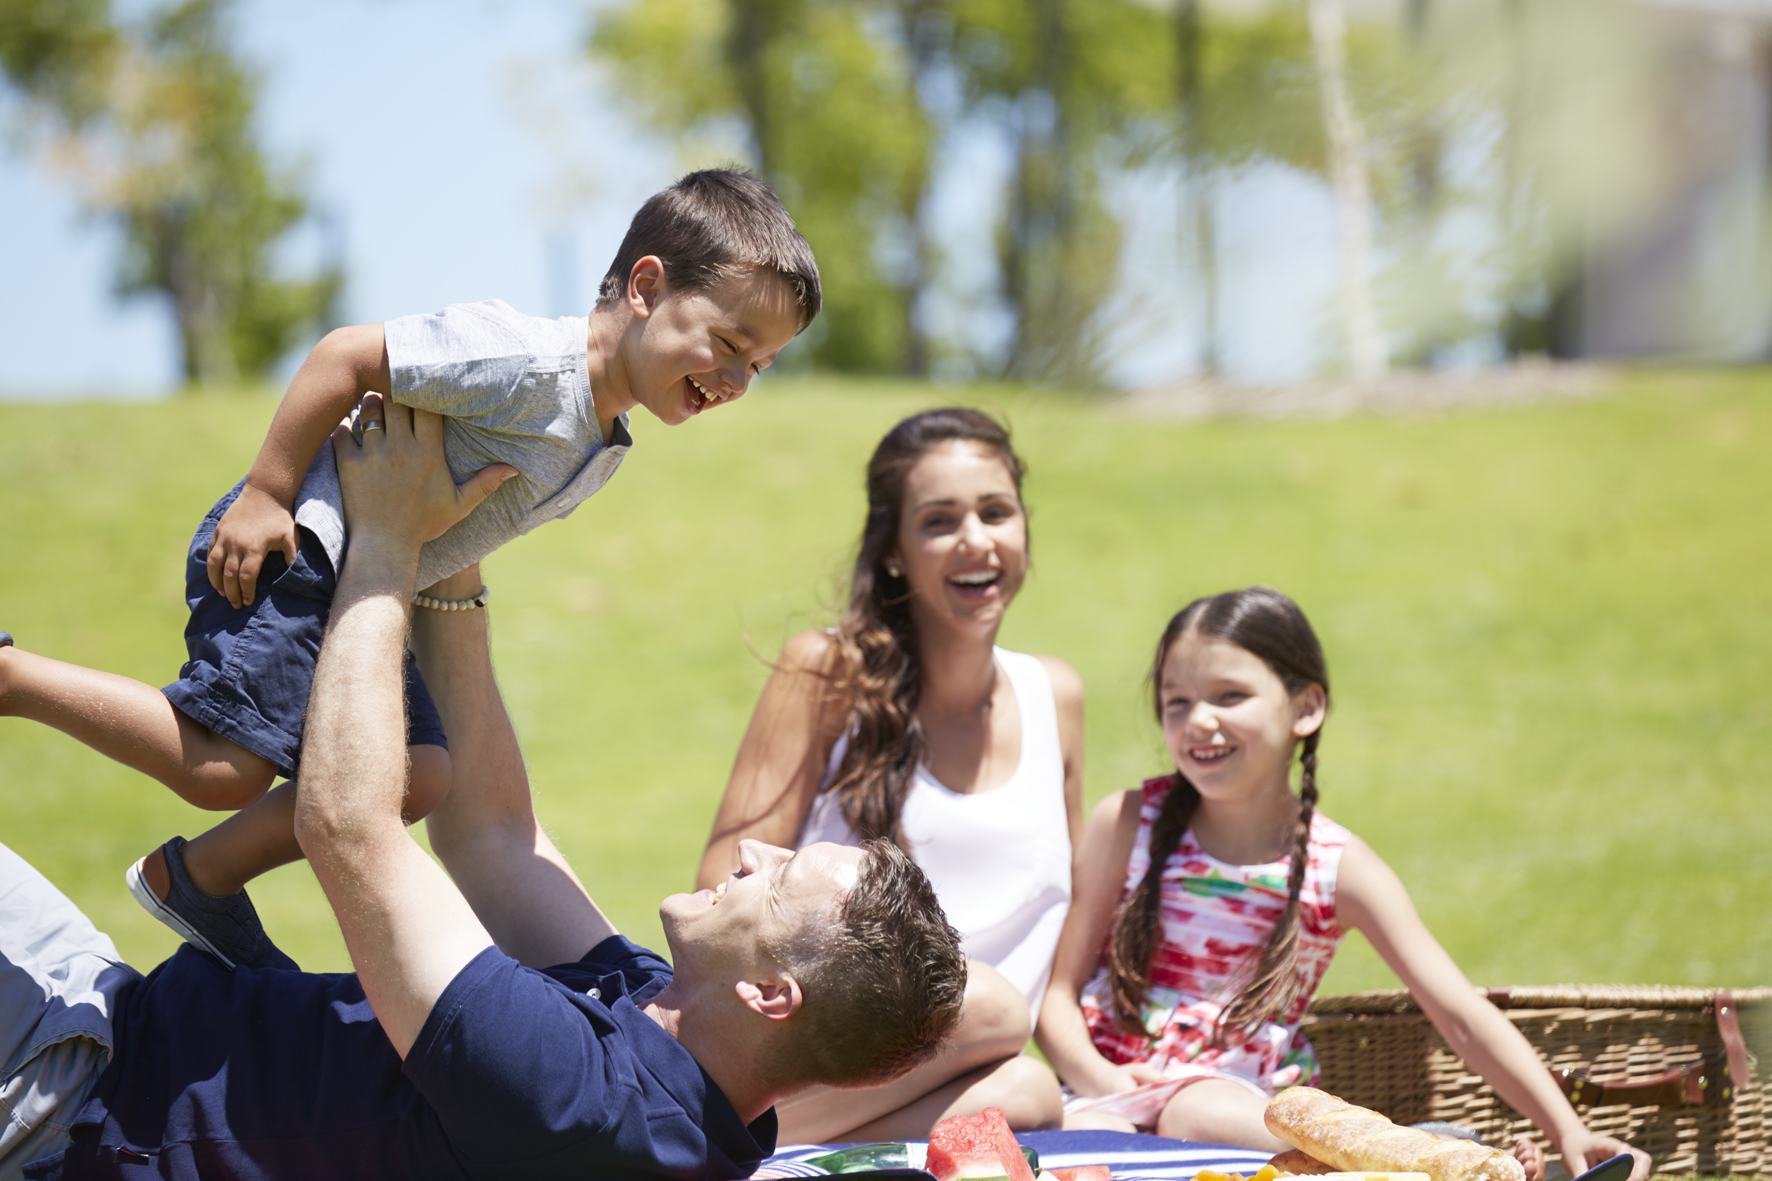 Baldivis Parks - Family park picnics